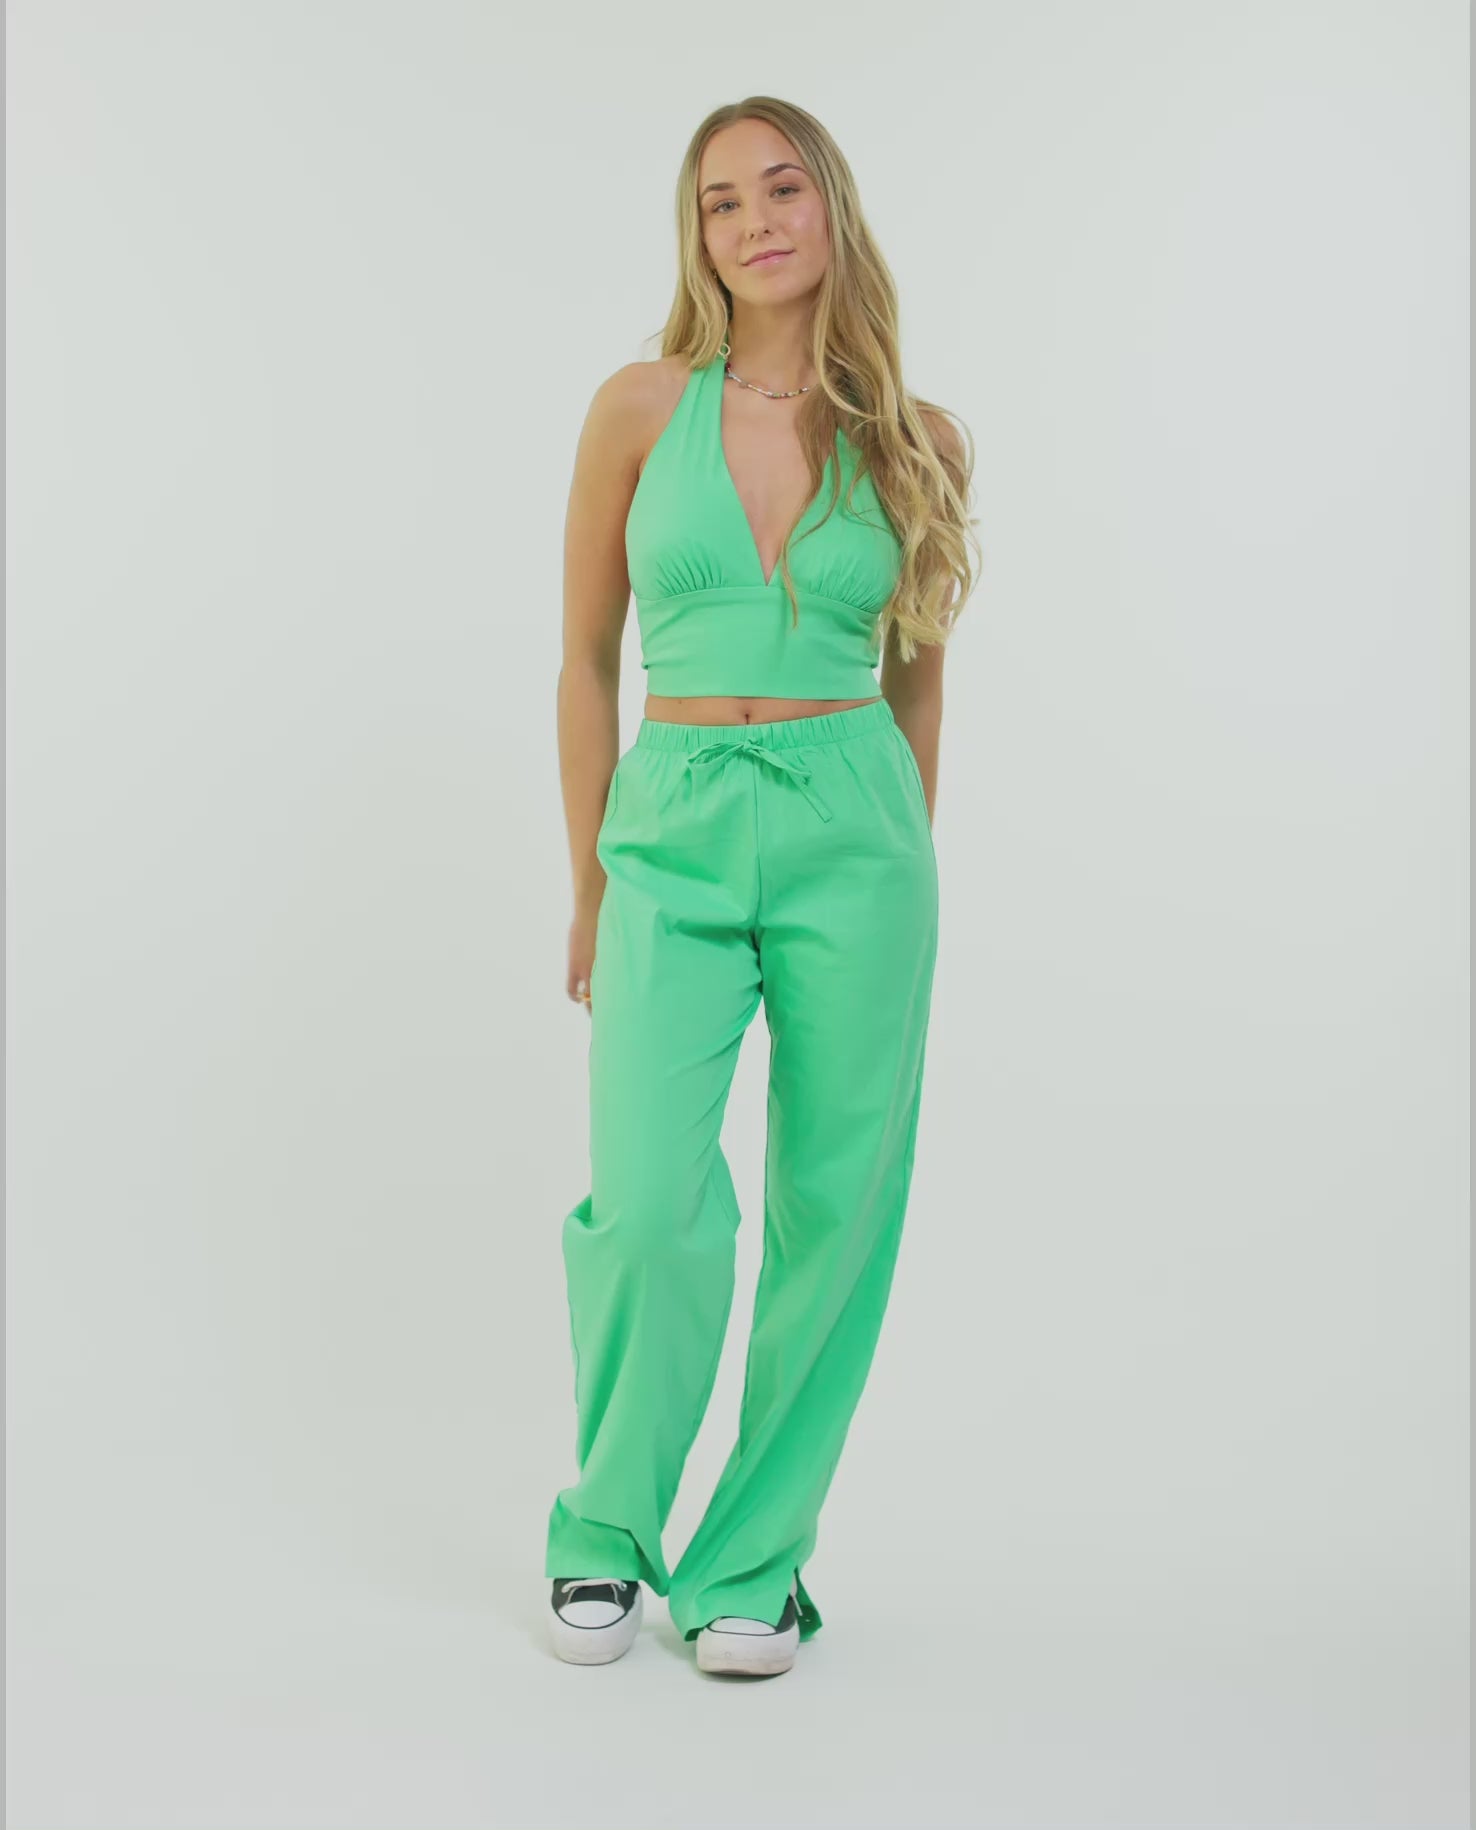 PANTALÓN PALM BEACH | Pantalón Fluido Verde de Mujer con Aberturas | THE-ARE